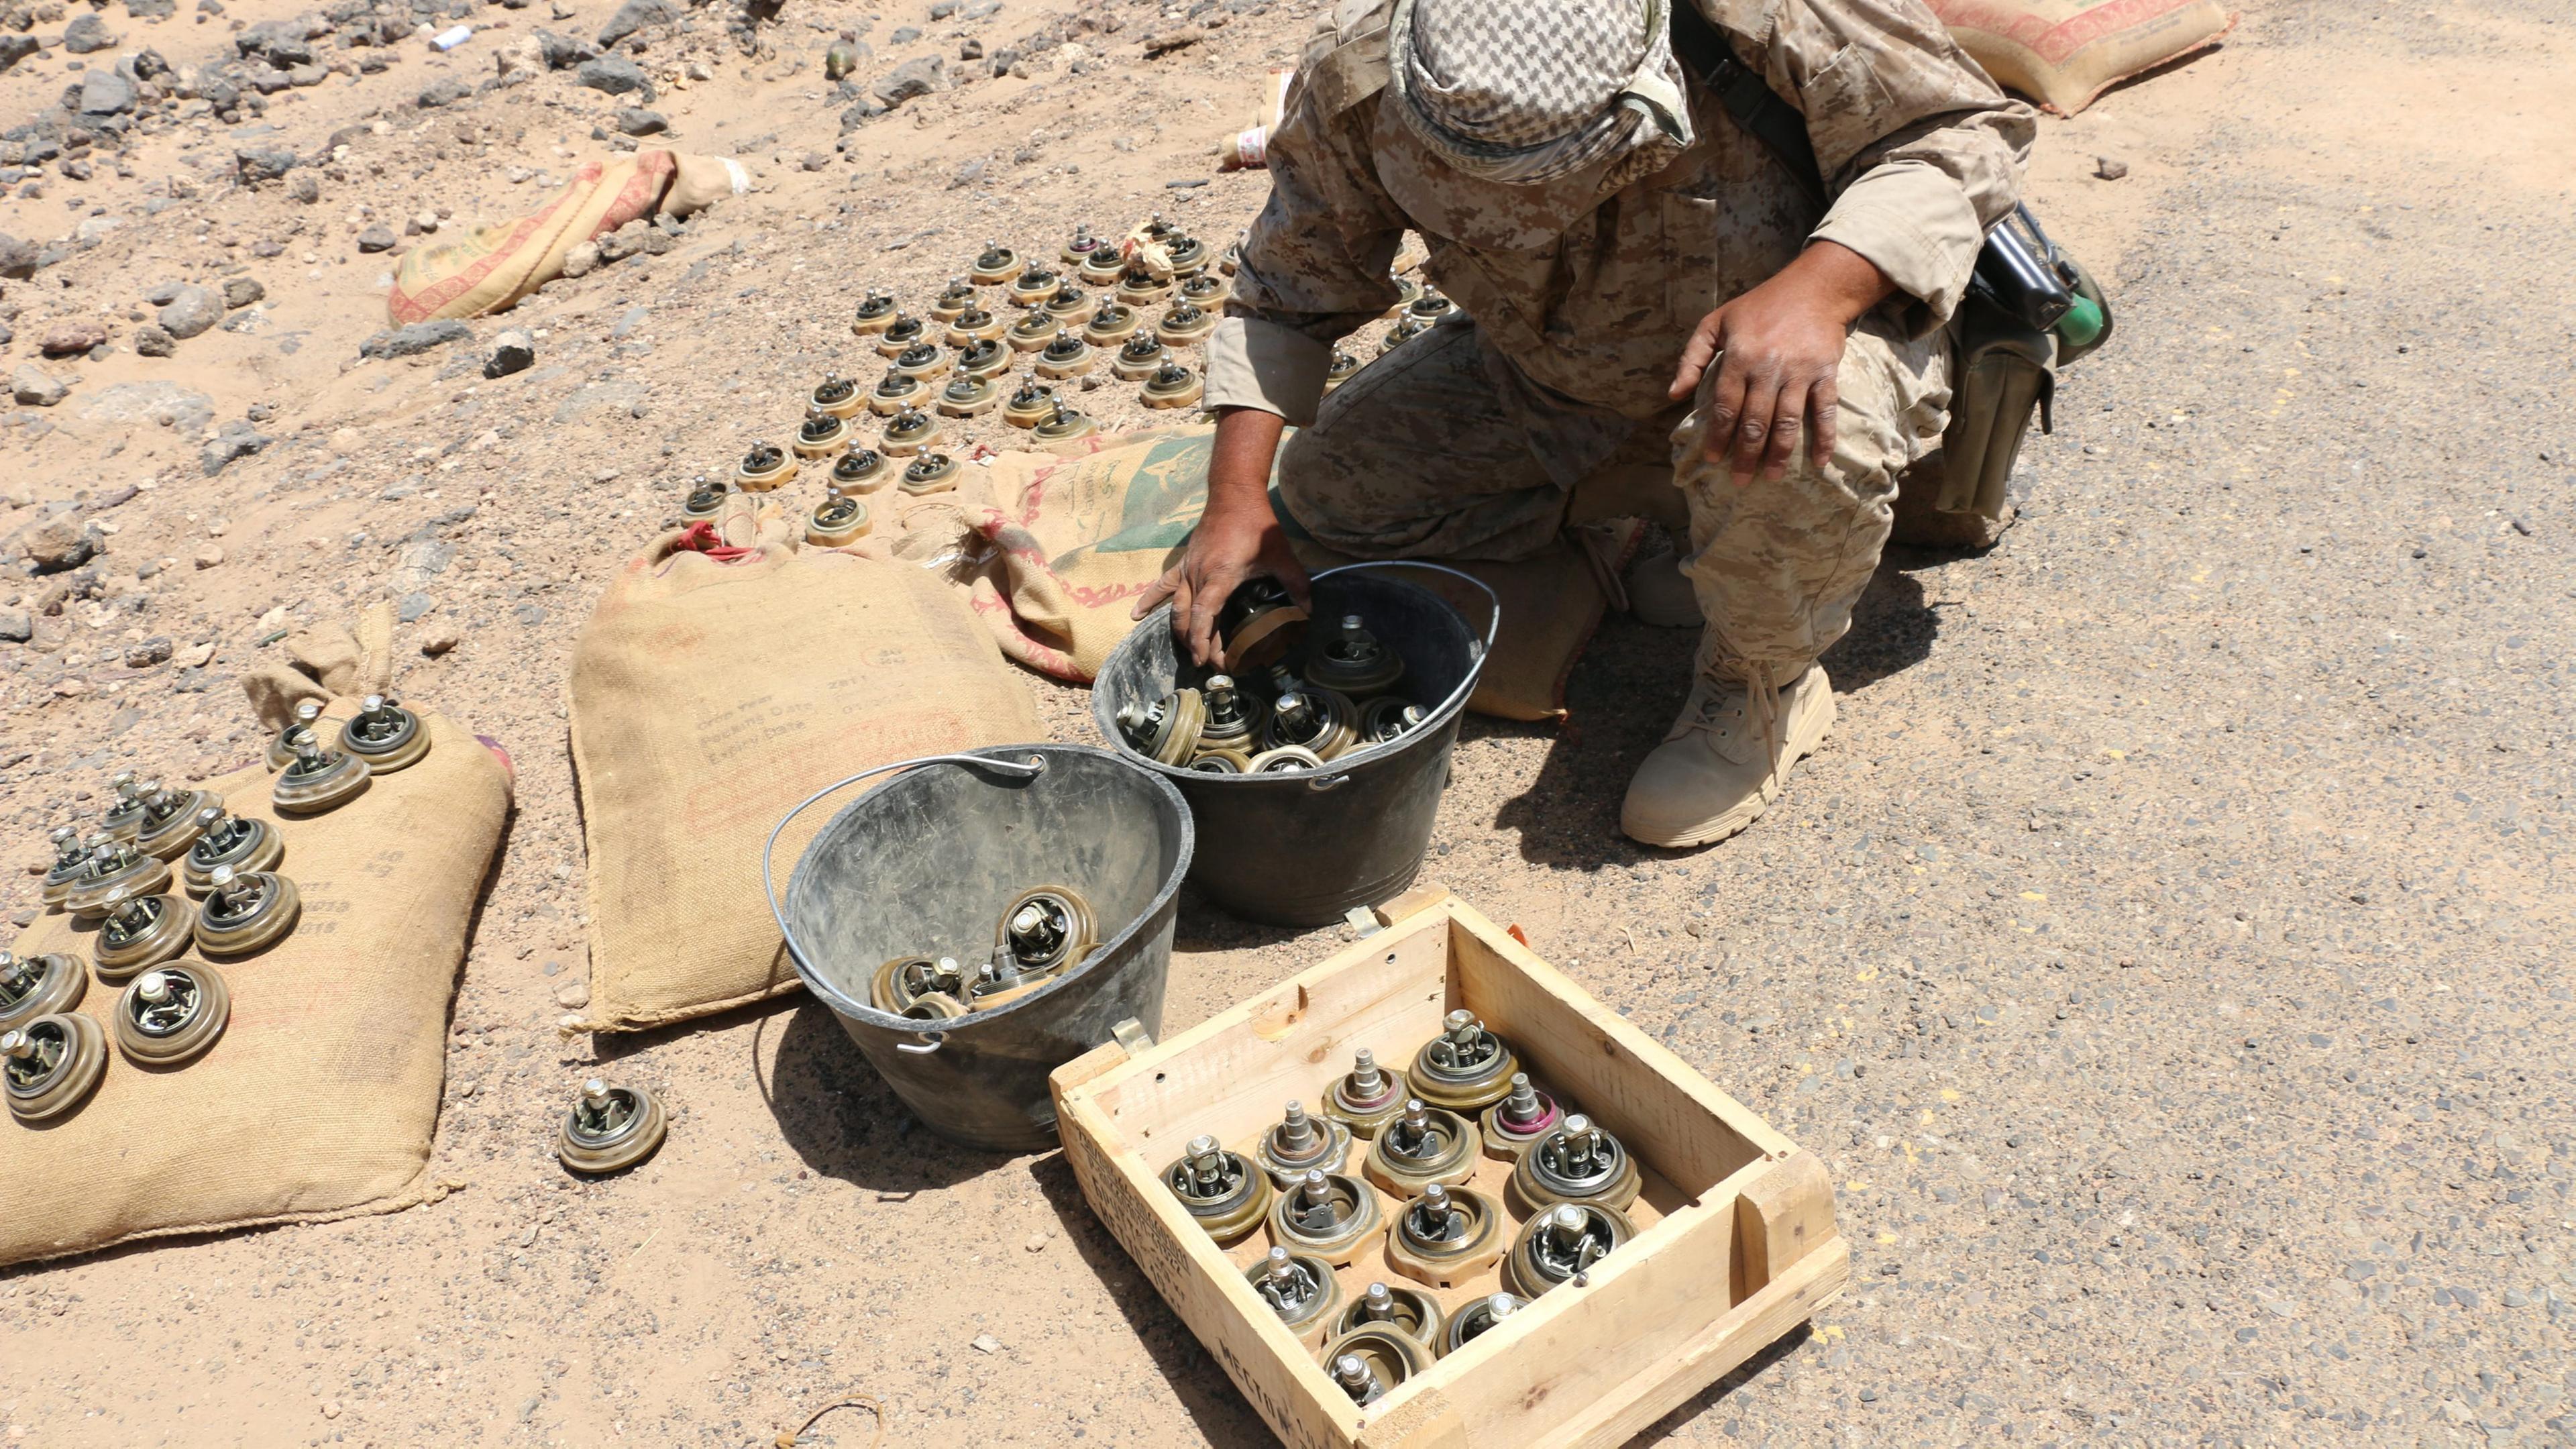 Soldat untersucht angeblich vopn Huthi-Rebellen gelegte Landminen